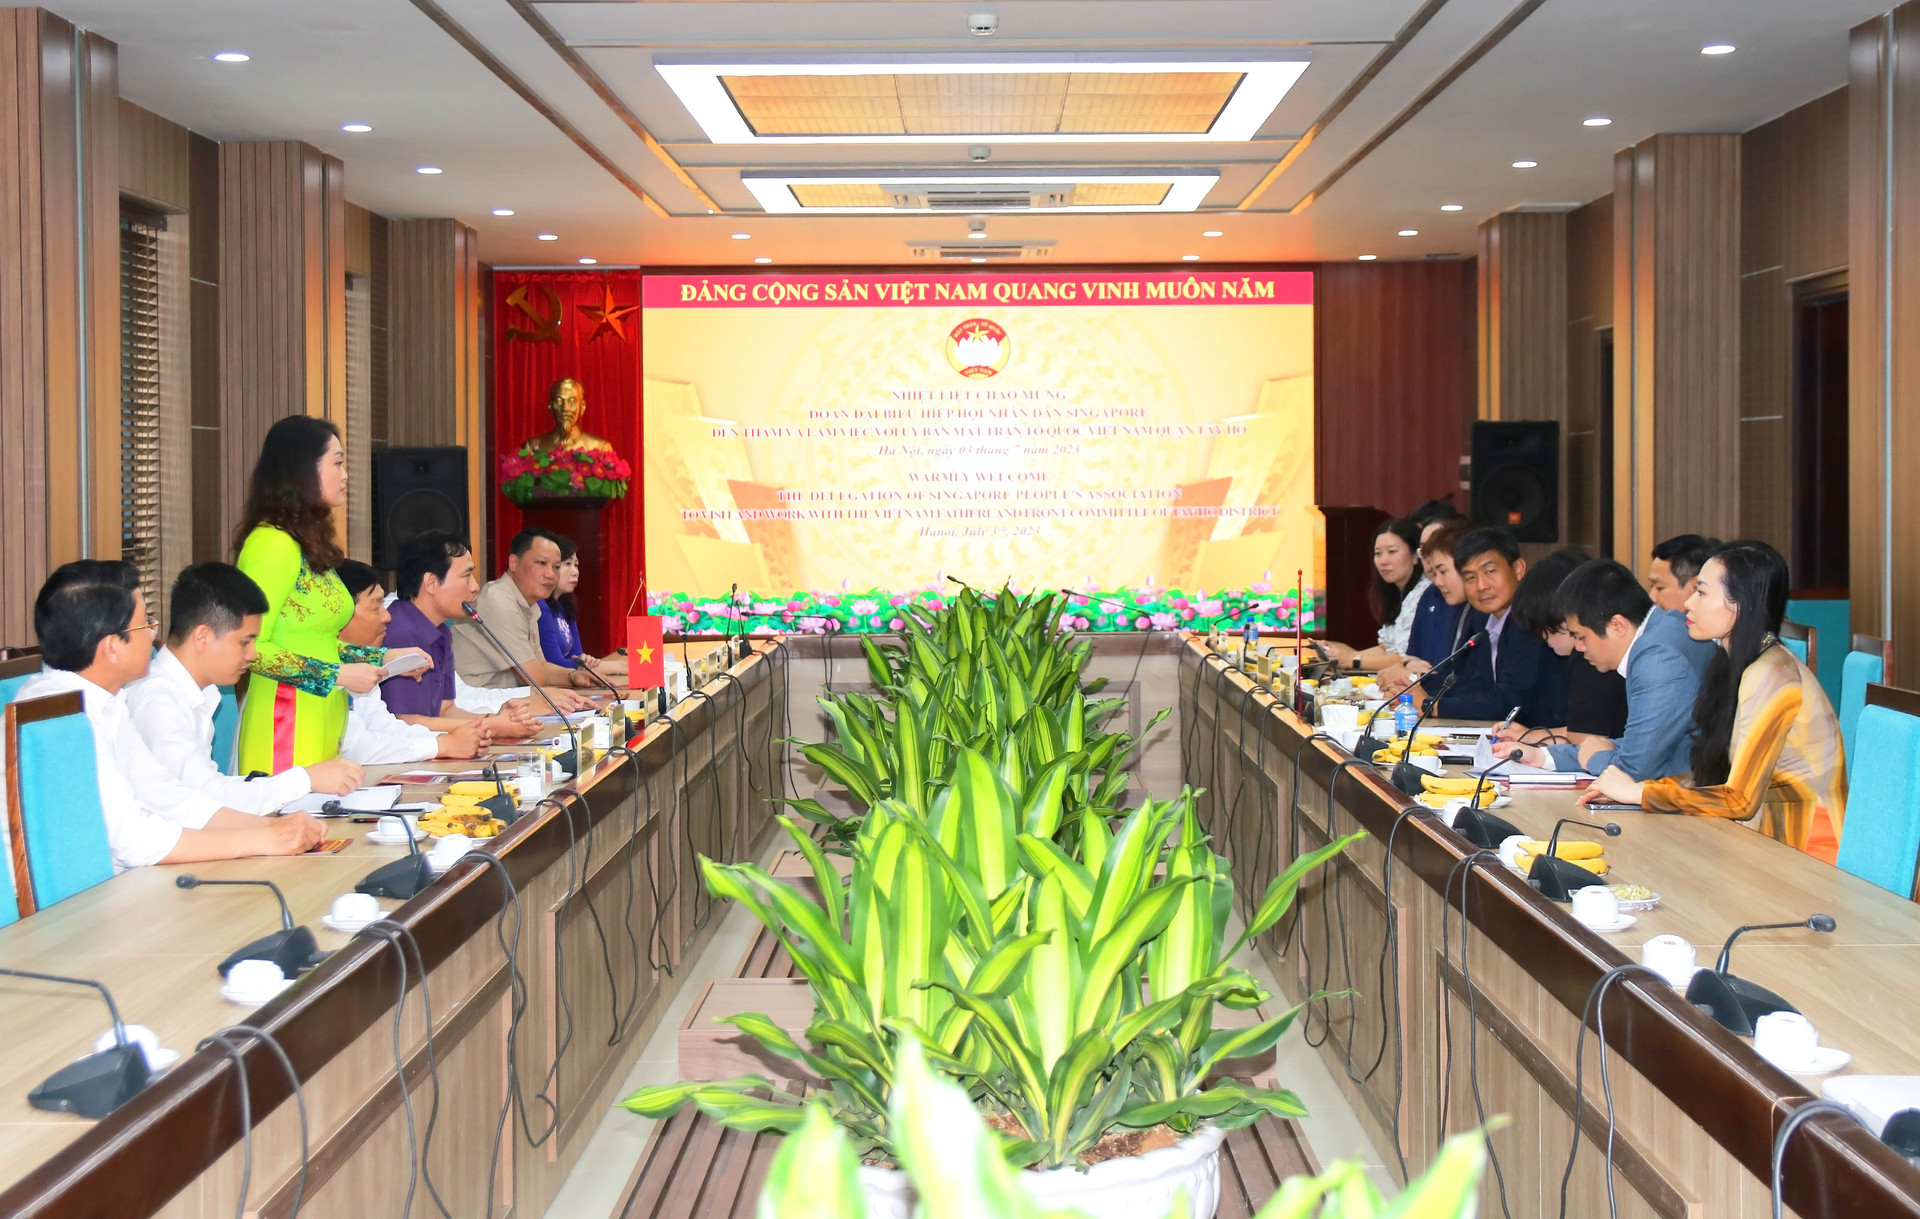 Đoàn đại biểu cấp cao Hiệp hội Nhân dân Xin-ga-po thăm và trao đổi kinh nghiệm công tác với Ban Thường trực Ủy ban MTTQ Việt Nam quận Tây Hồ.